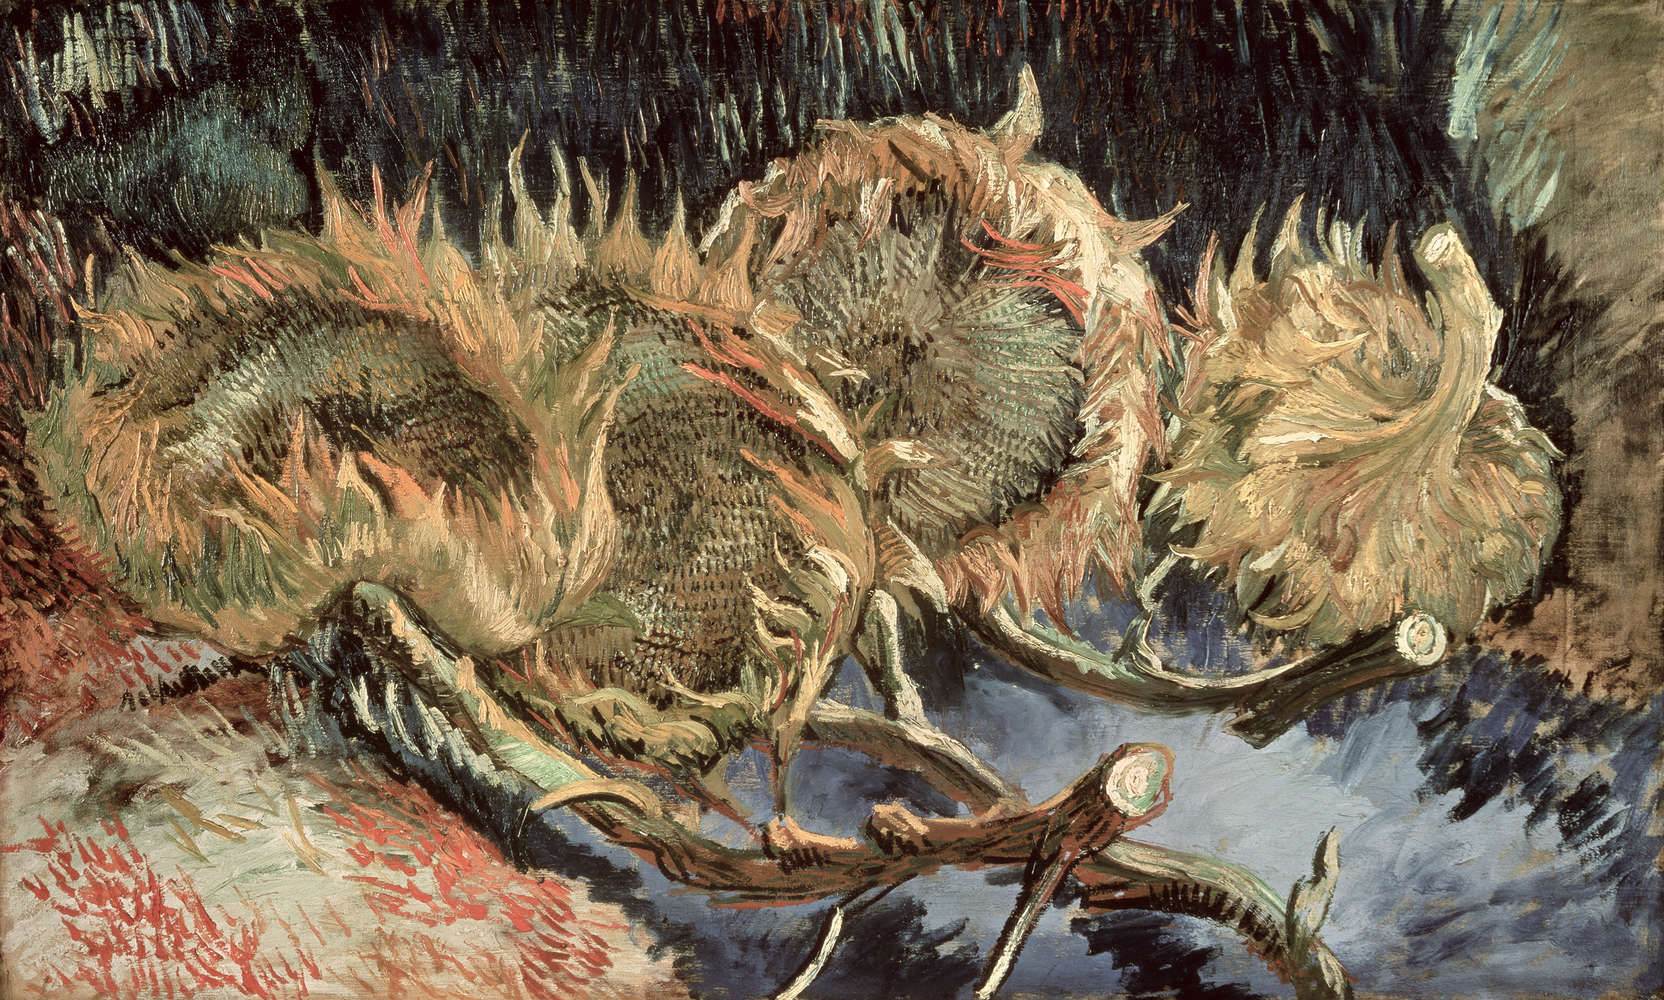             Papier peint panoramique "Quatre tournesols fanés" de Vincent van Gogh
        